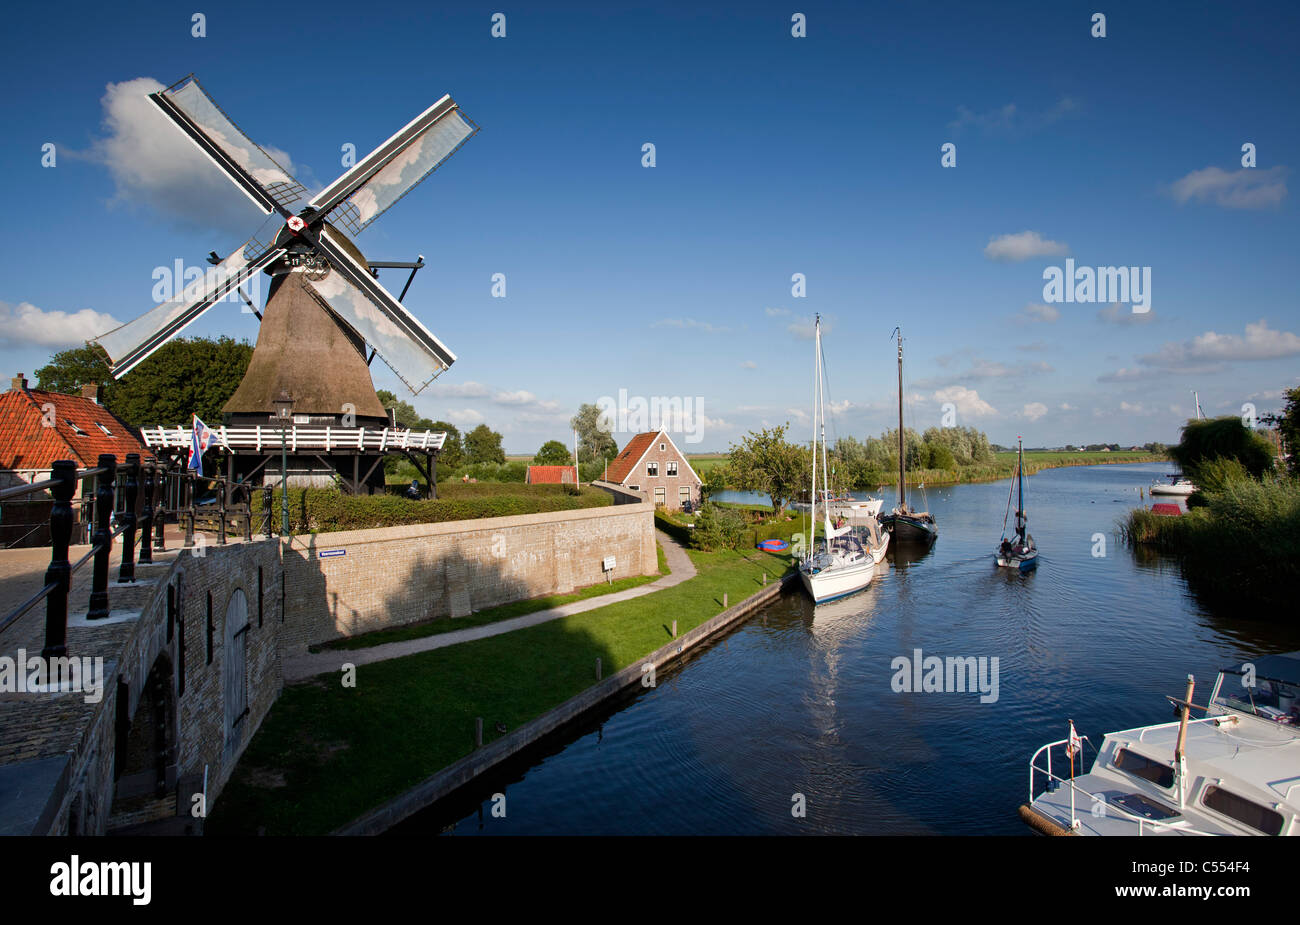 Les Pays-Bas, Sloten, Yachts et moulin à vent. Banque D'Images